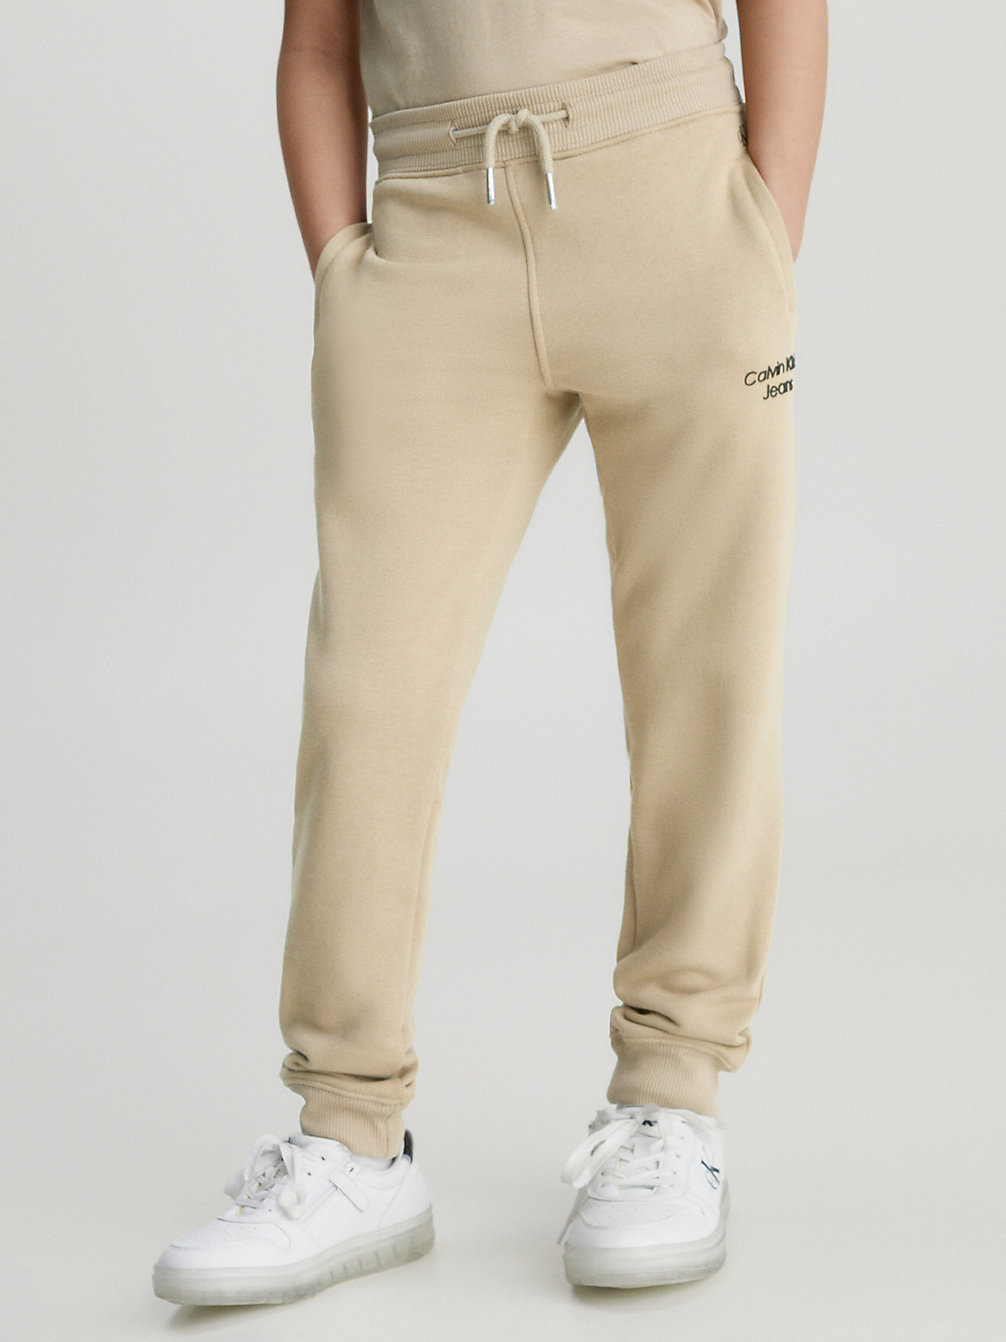 TRAVERTINE > Spodnie Dresowe Z Logo Z Bawełny Organicznej > undefined boys - Calvin Klein